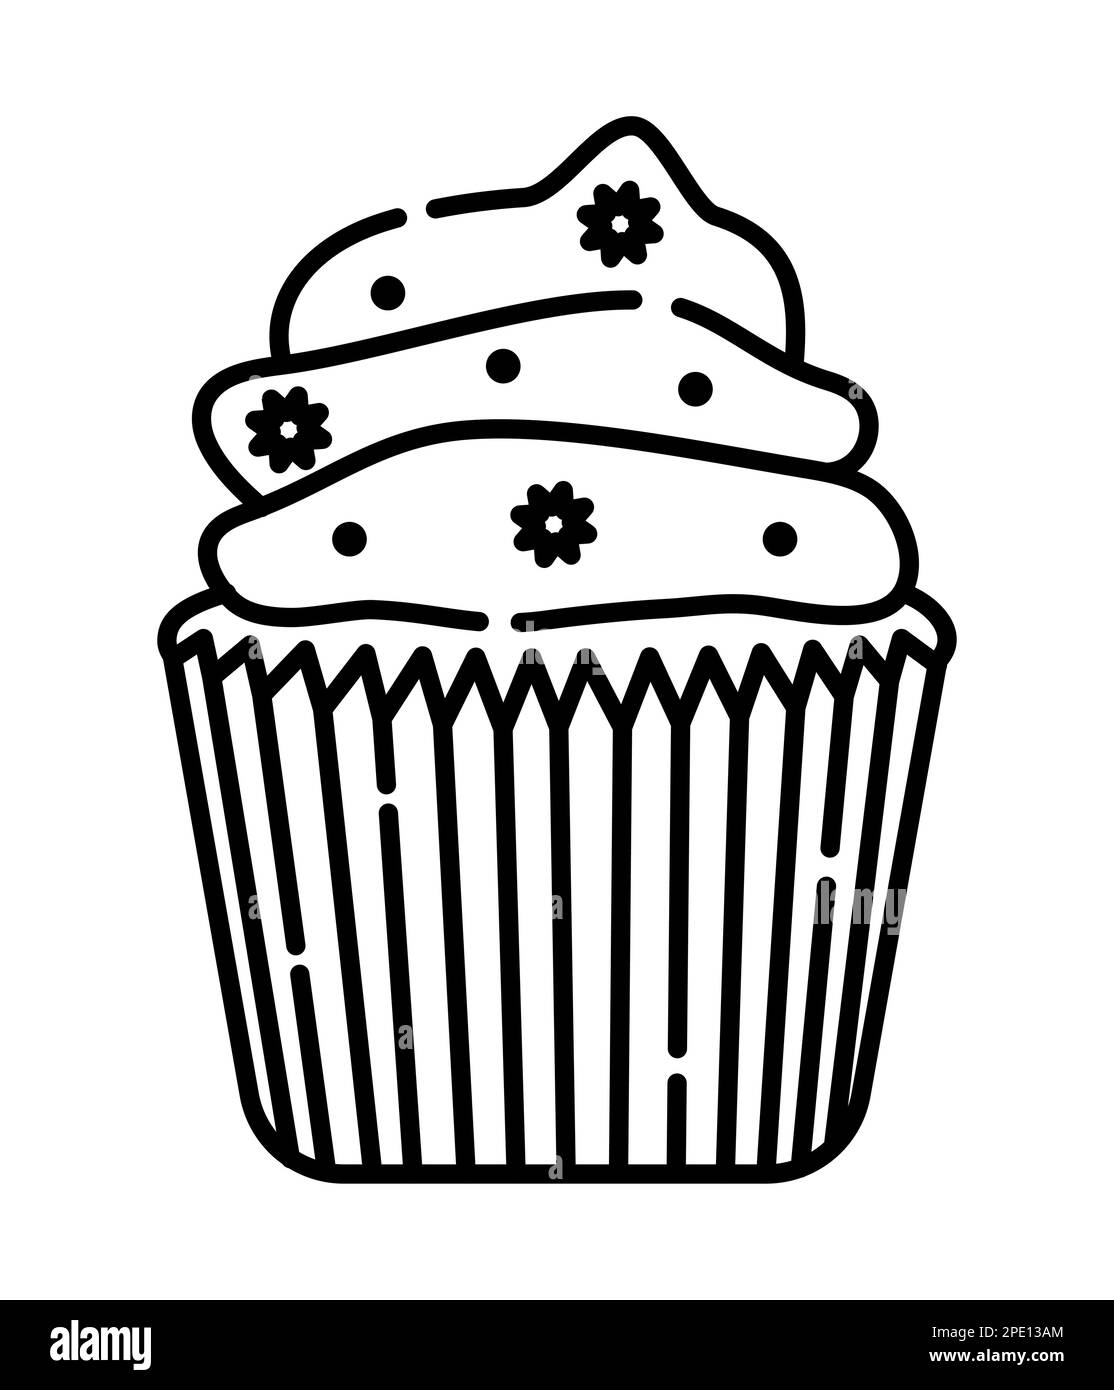 Appetitoso cupcake cremoso, immagine vettoriale in bianco e nero Illustrazione Vettoriale